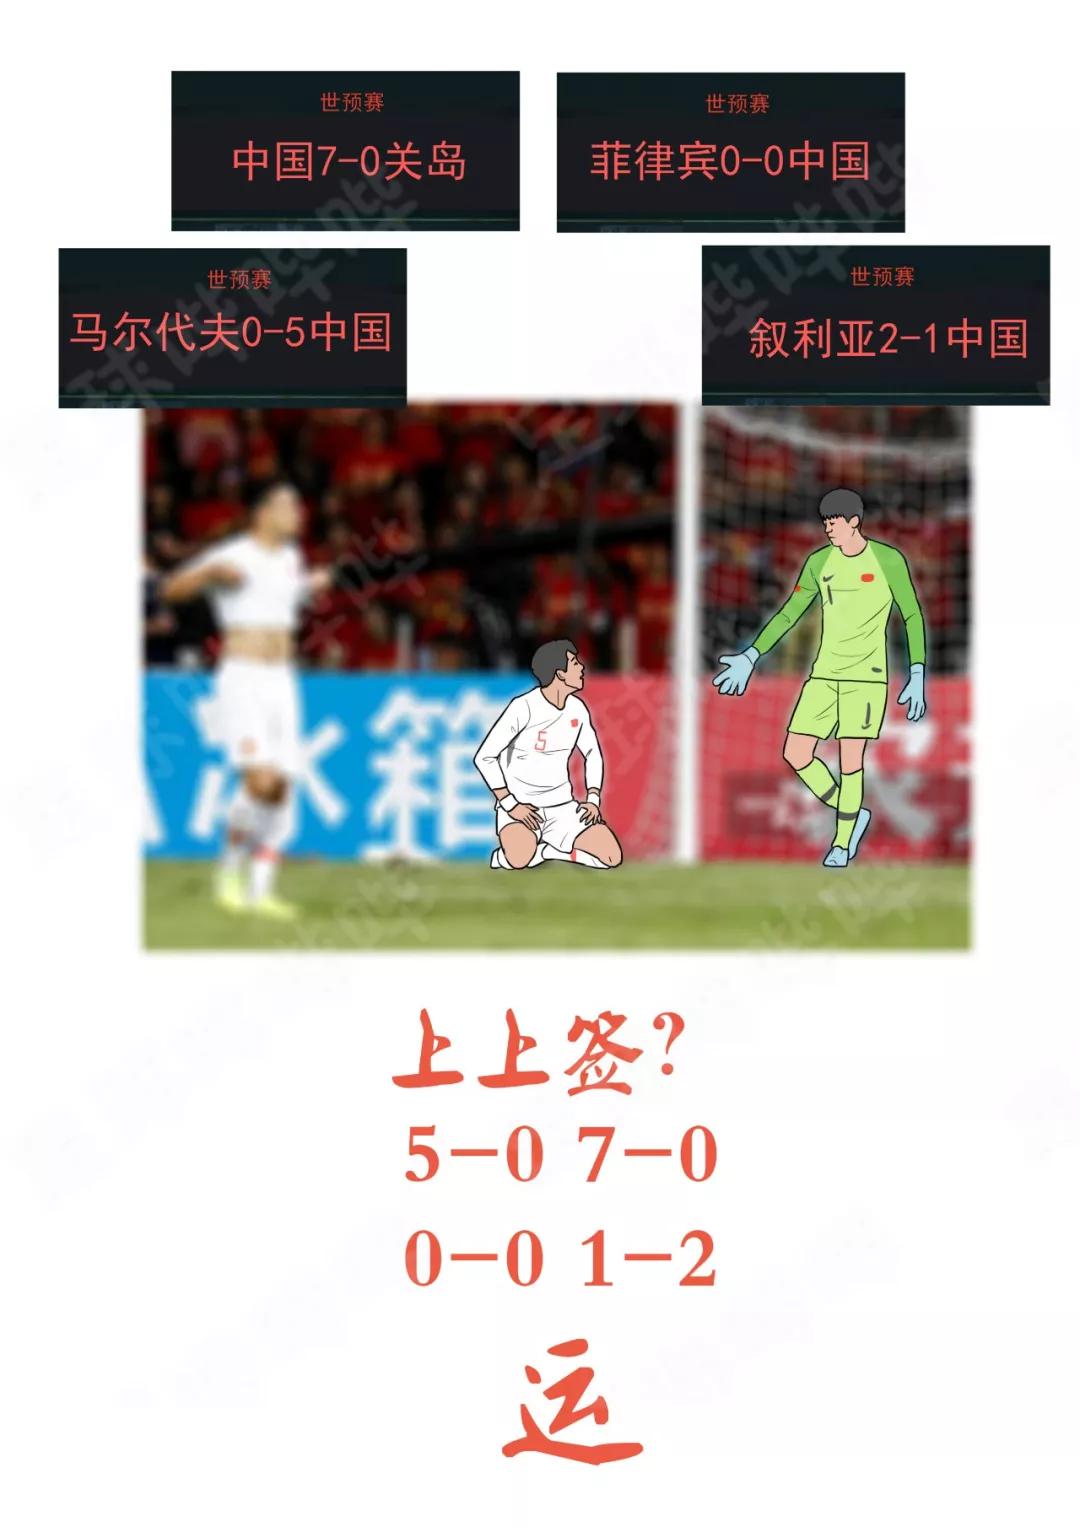 19张图，定格中国足球的2019(16)